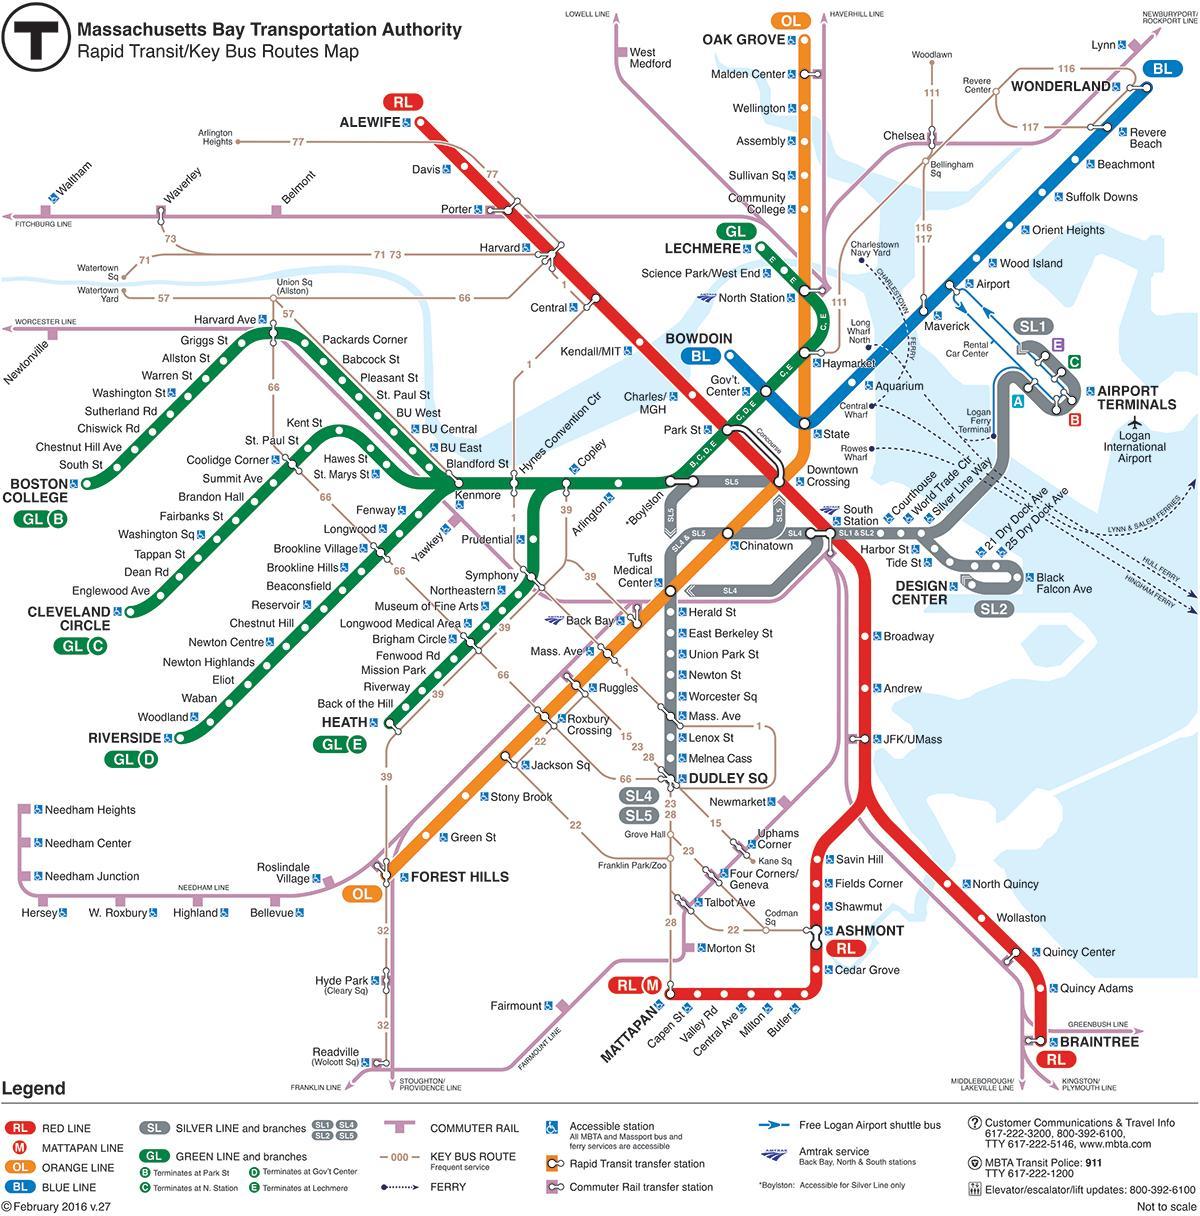 MBTA kartē sarkanā līnija